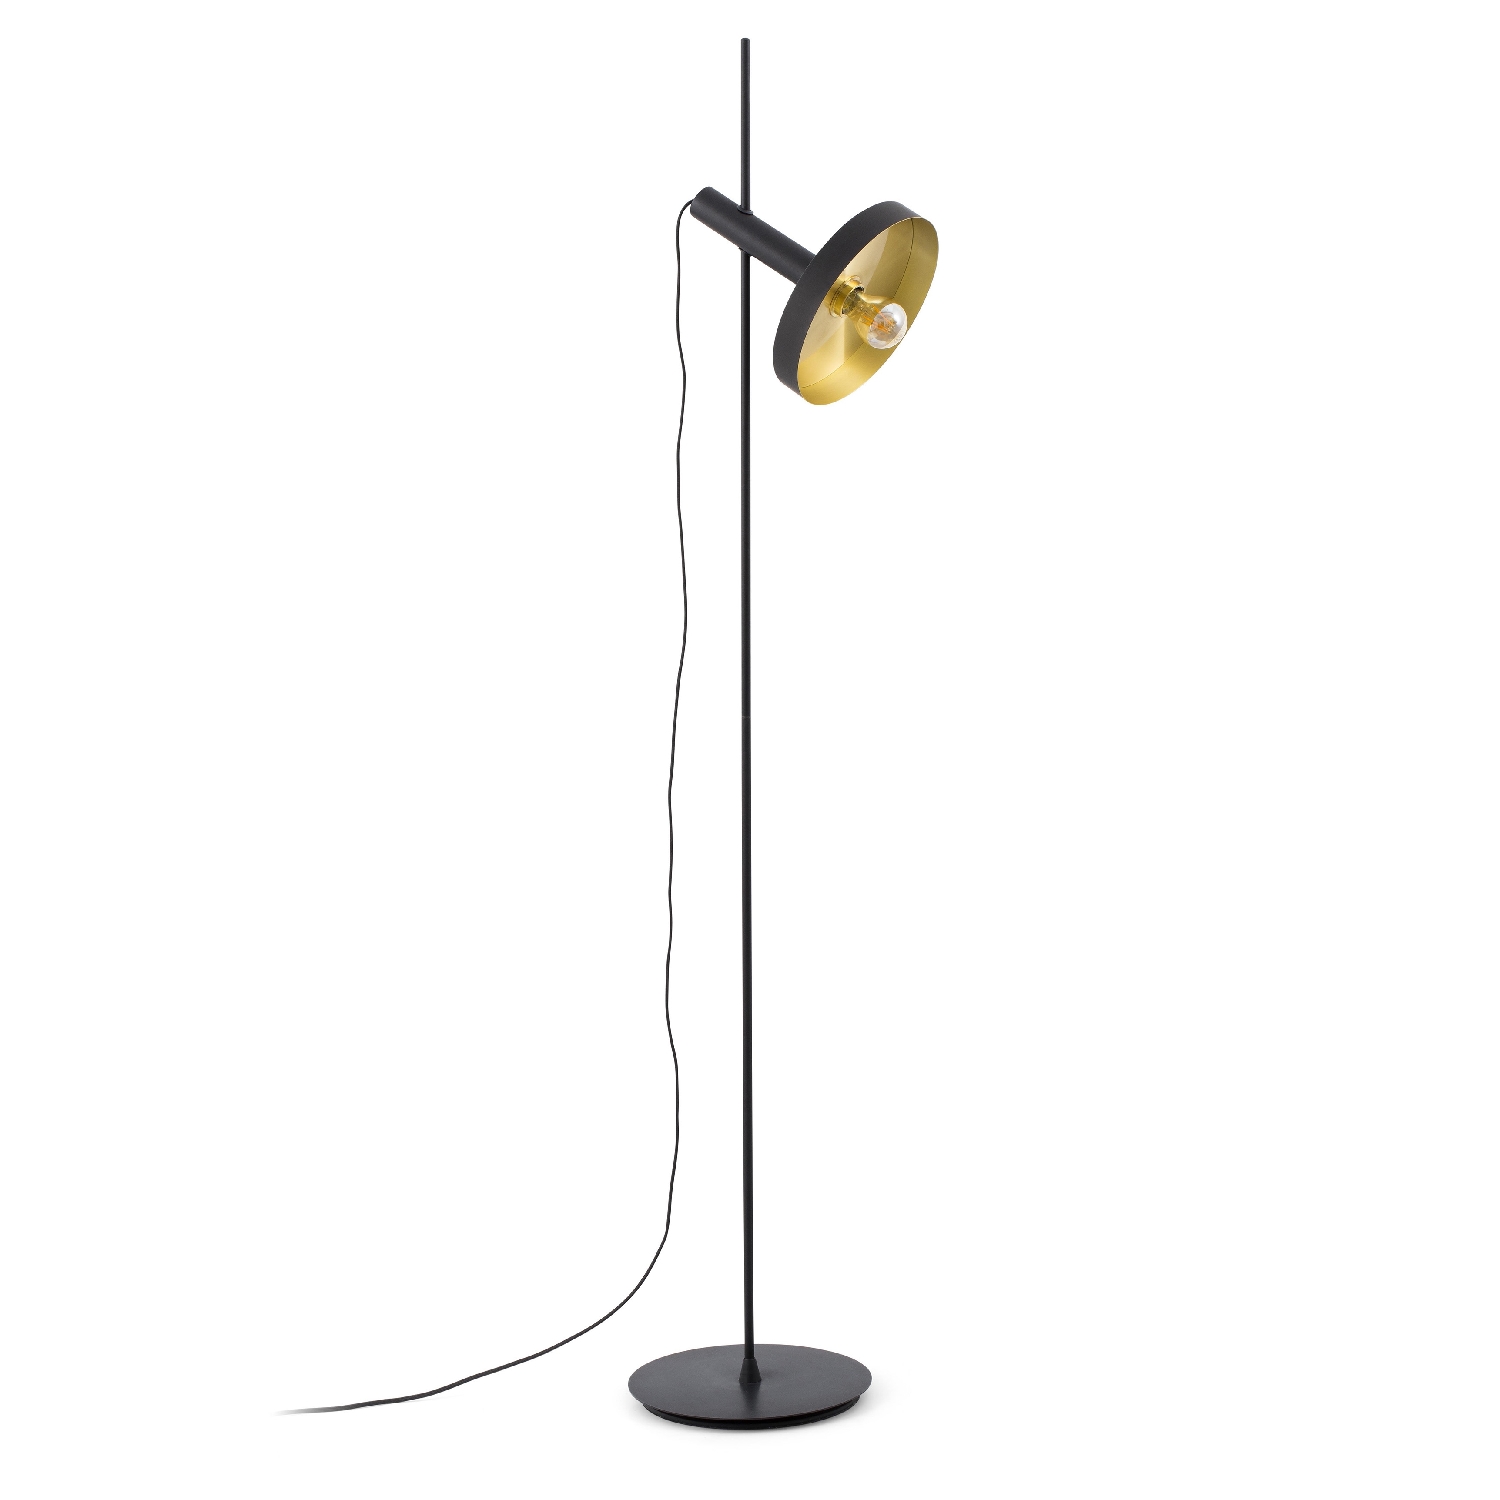 Lampadar / Lampa de podea design modern WHIZZ negru/auriu 20164-95